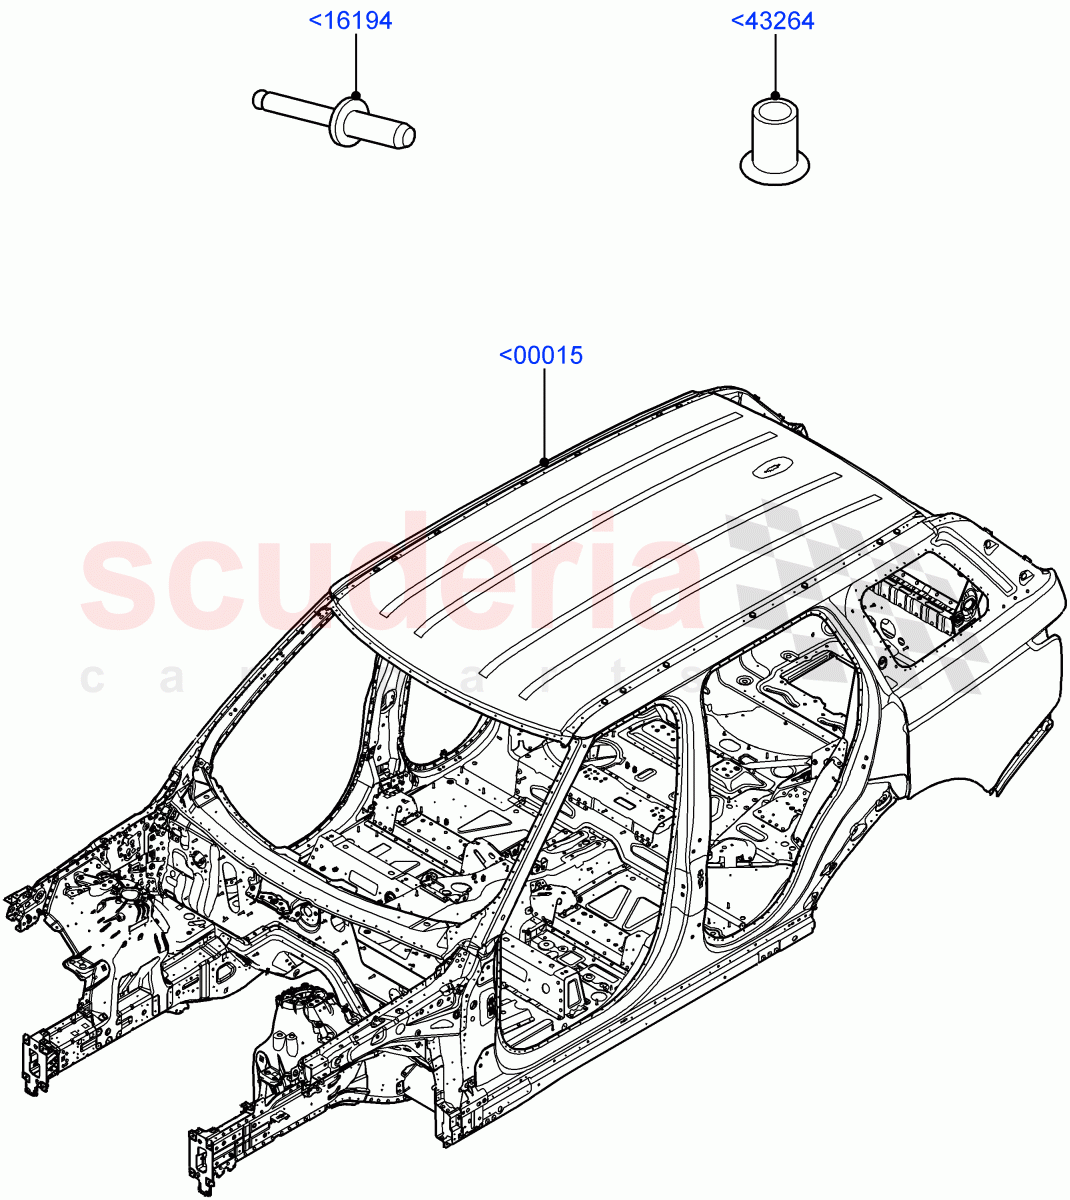 Bodyshell of Land Rover Land Rover Range Rover (2012-2021) [3.0 I6 Turbo Diesel AJ20D6]